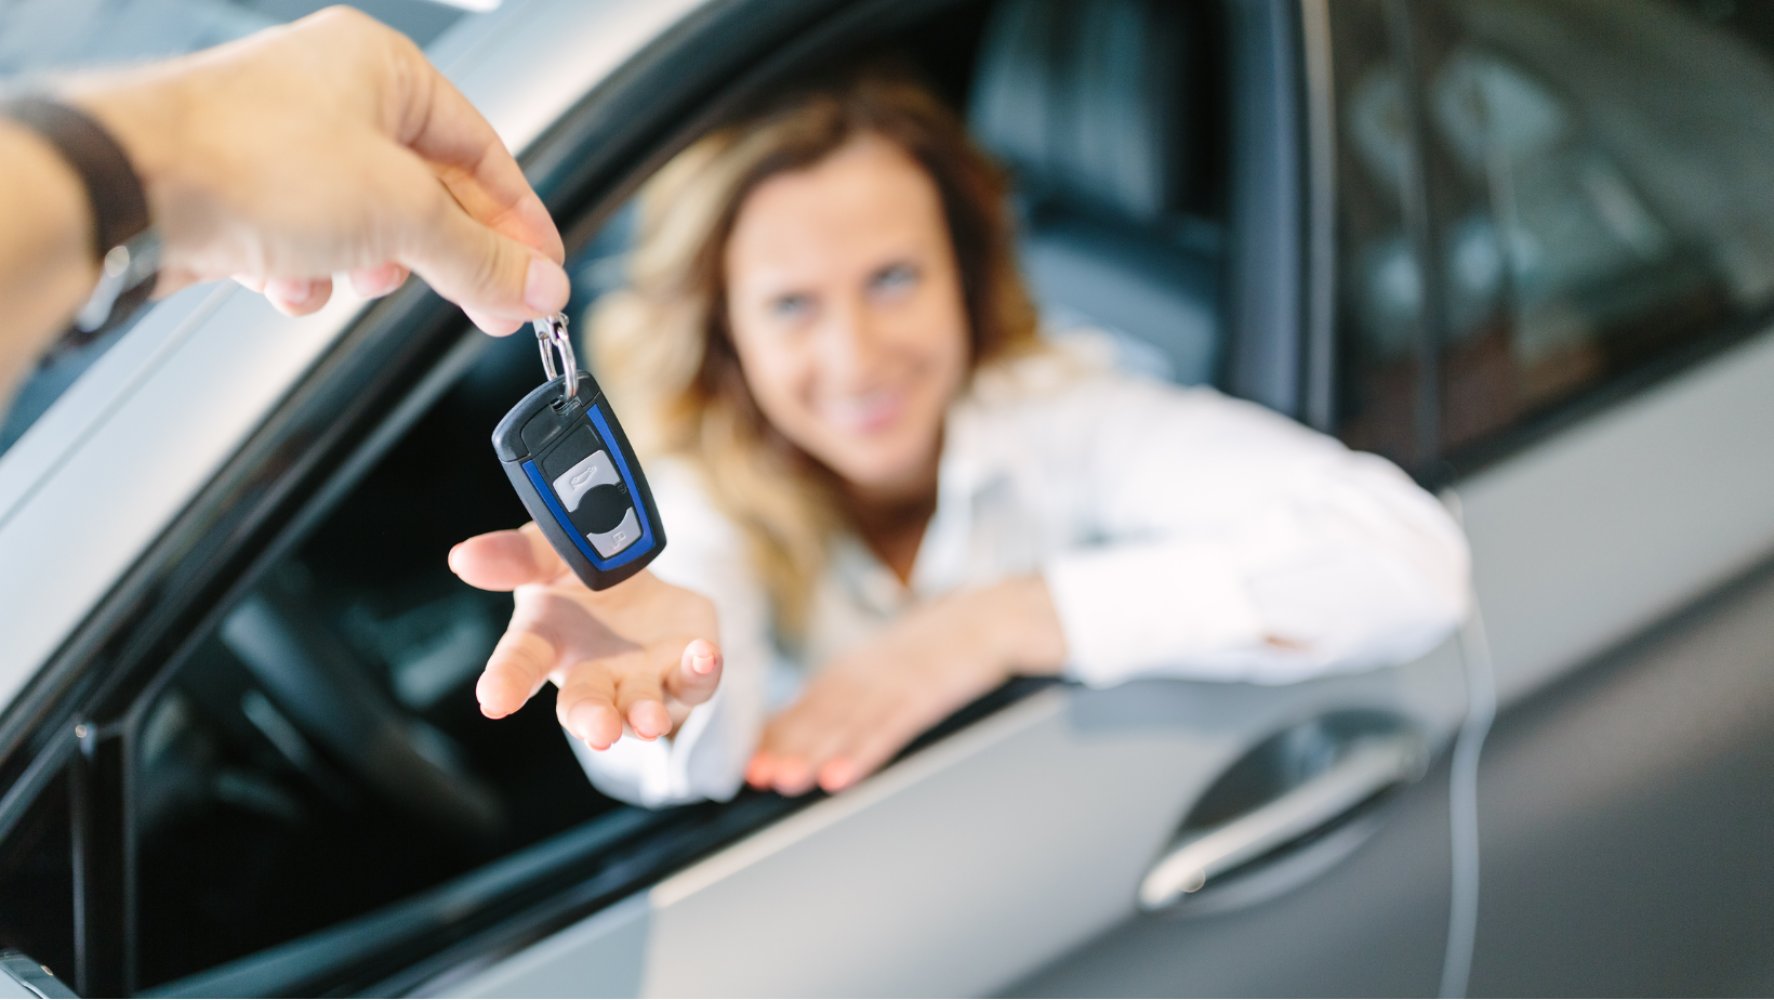 En kvinne, som sitter i en bil, strekker seg mot en hånd med bilnøkler.